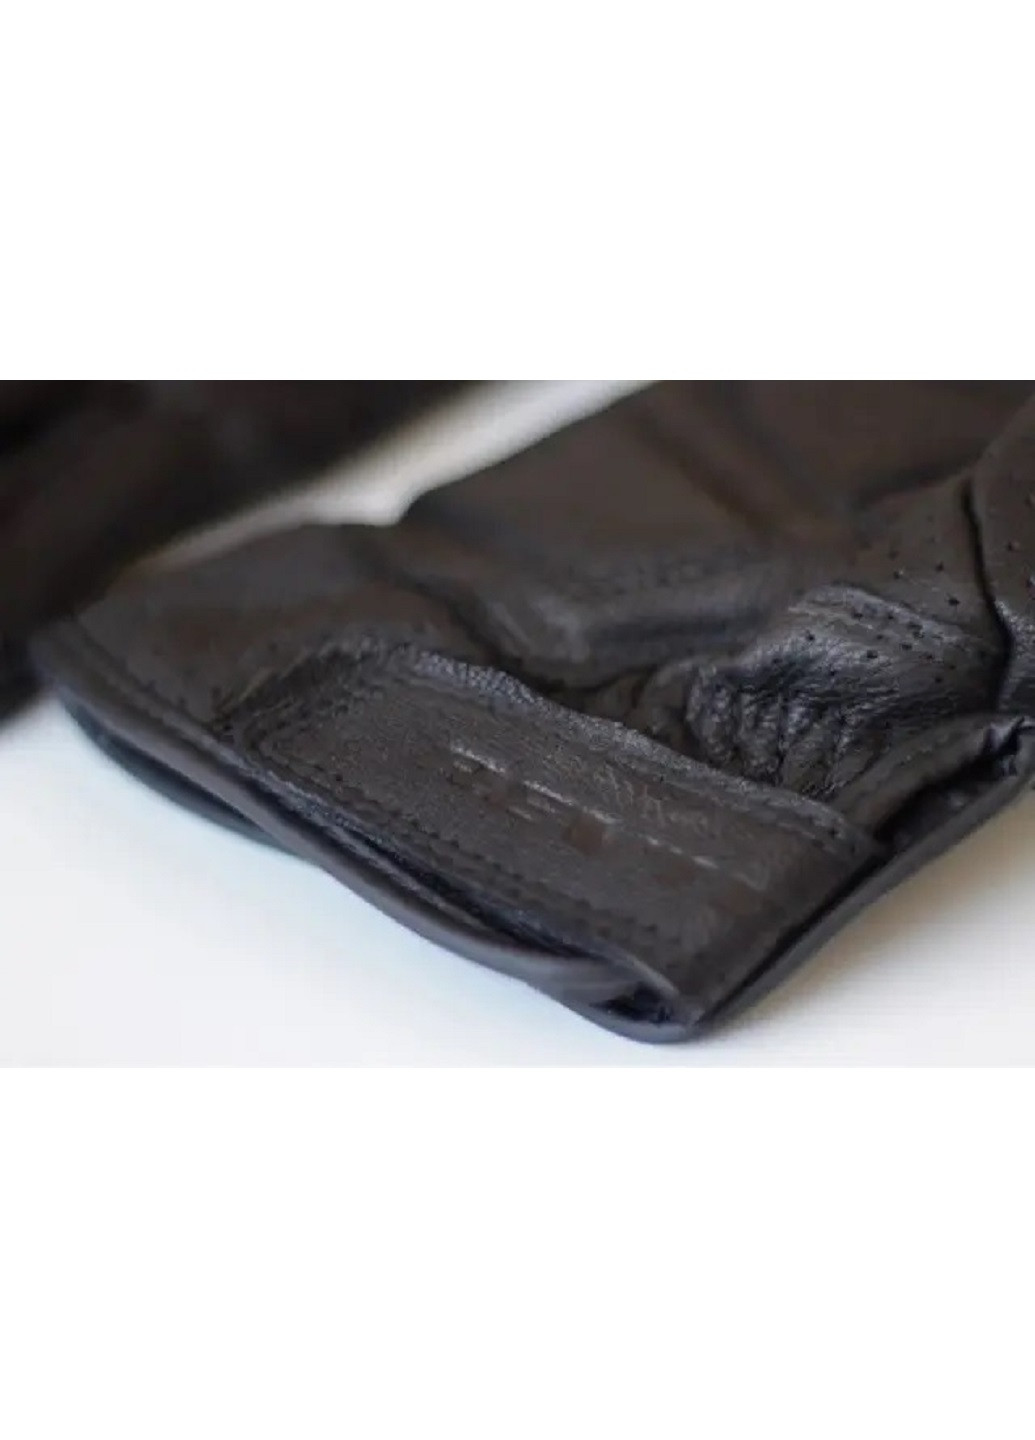 Мото перчатки рукавицы для мотоцикла с перфорацией кожаные летние вентилируемые унисекс мотозащита (57223-Нов) Размер М Francesco Marconi (252837512)